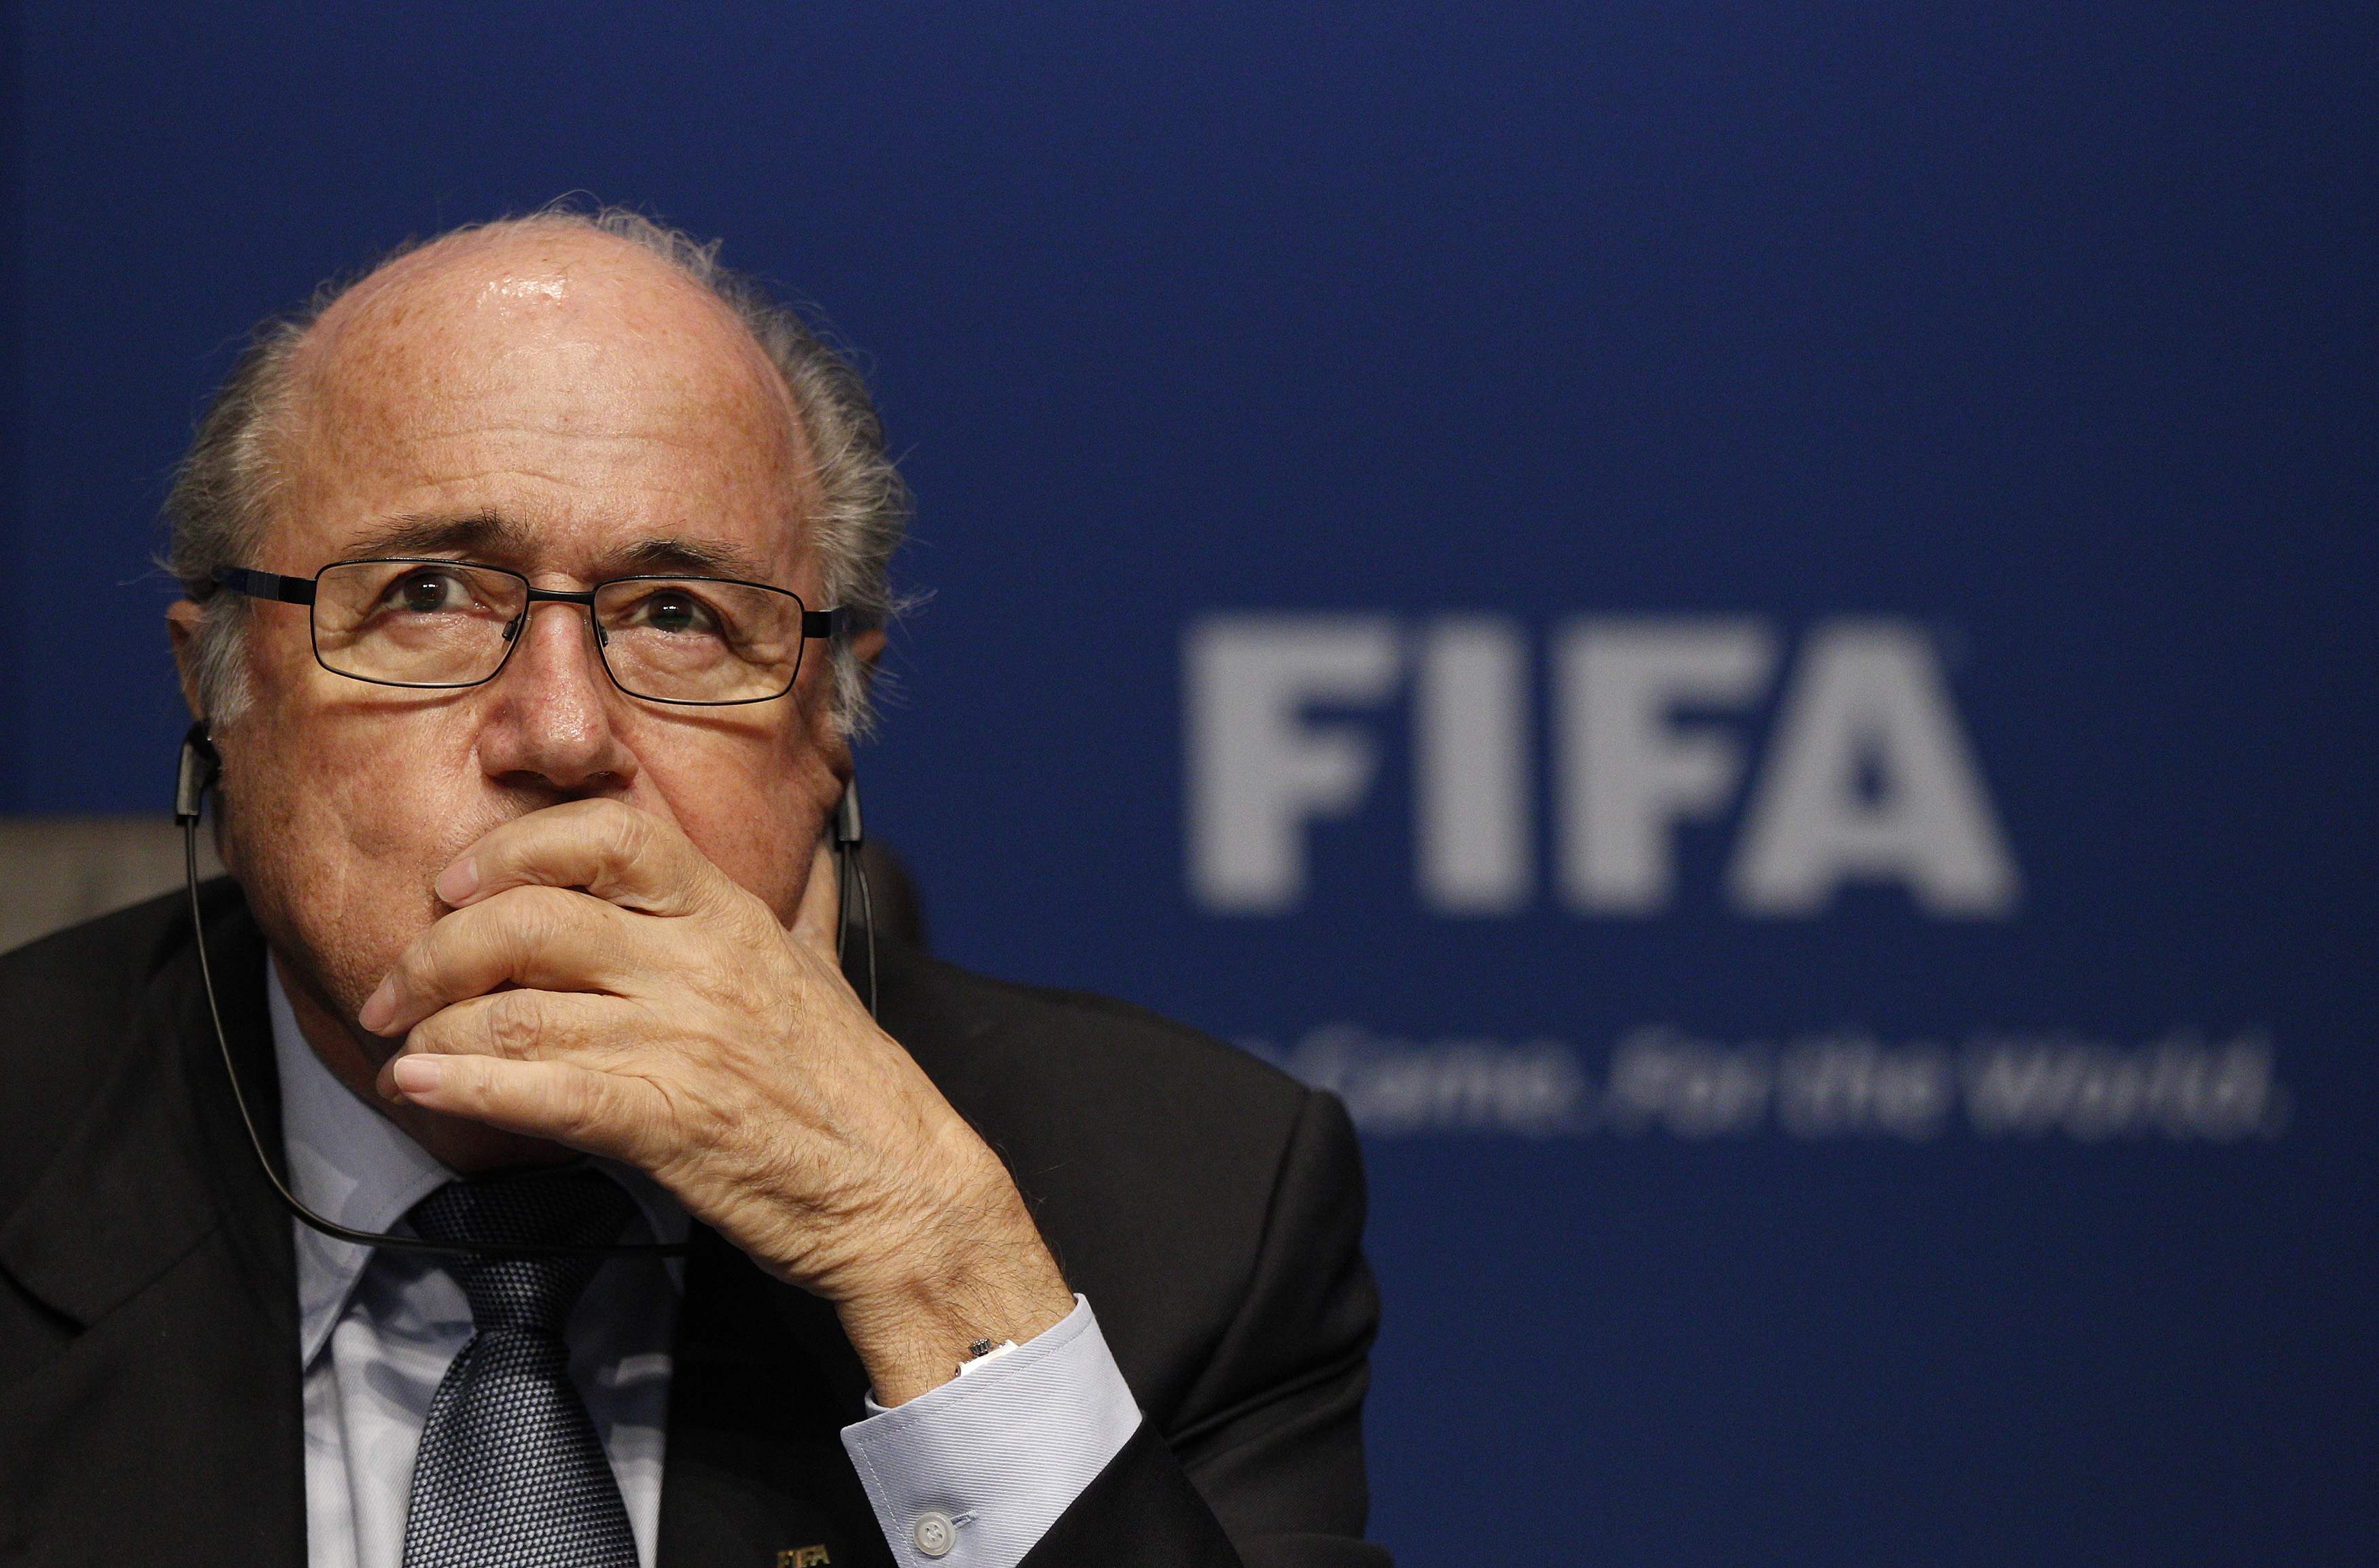 Situación política de Brasil “no es problema” de FIFA, dice Blatter